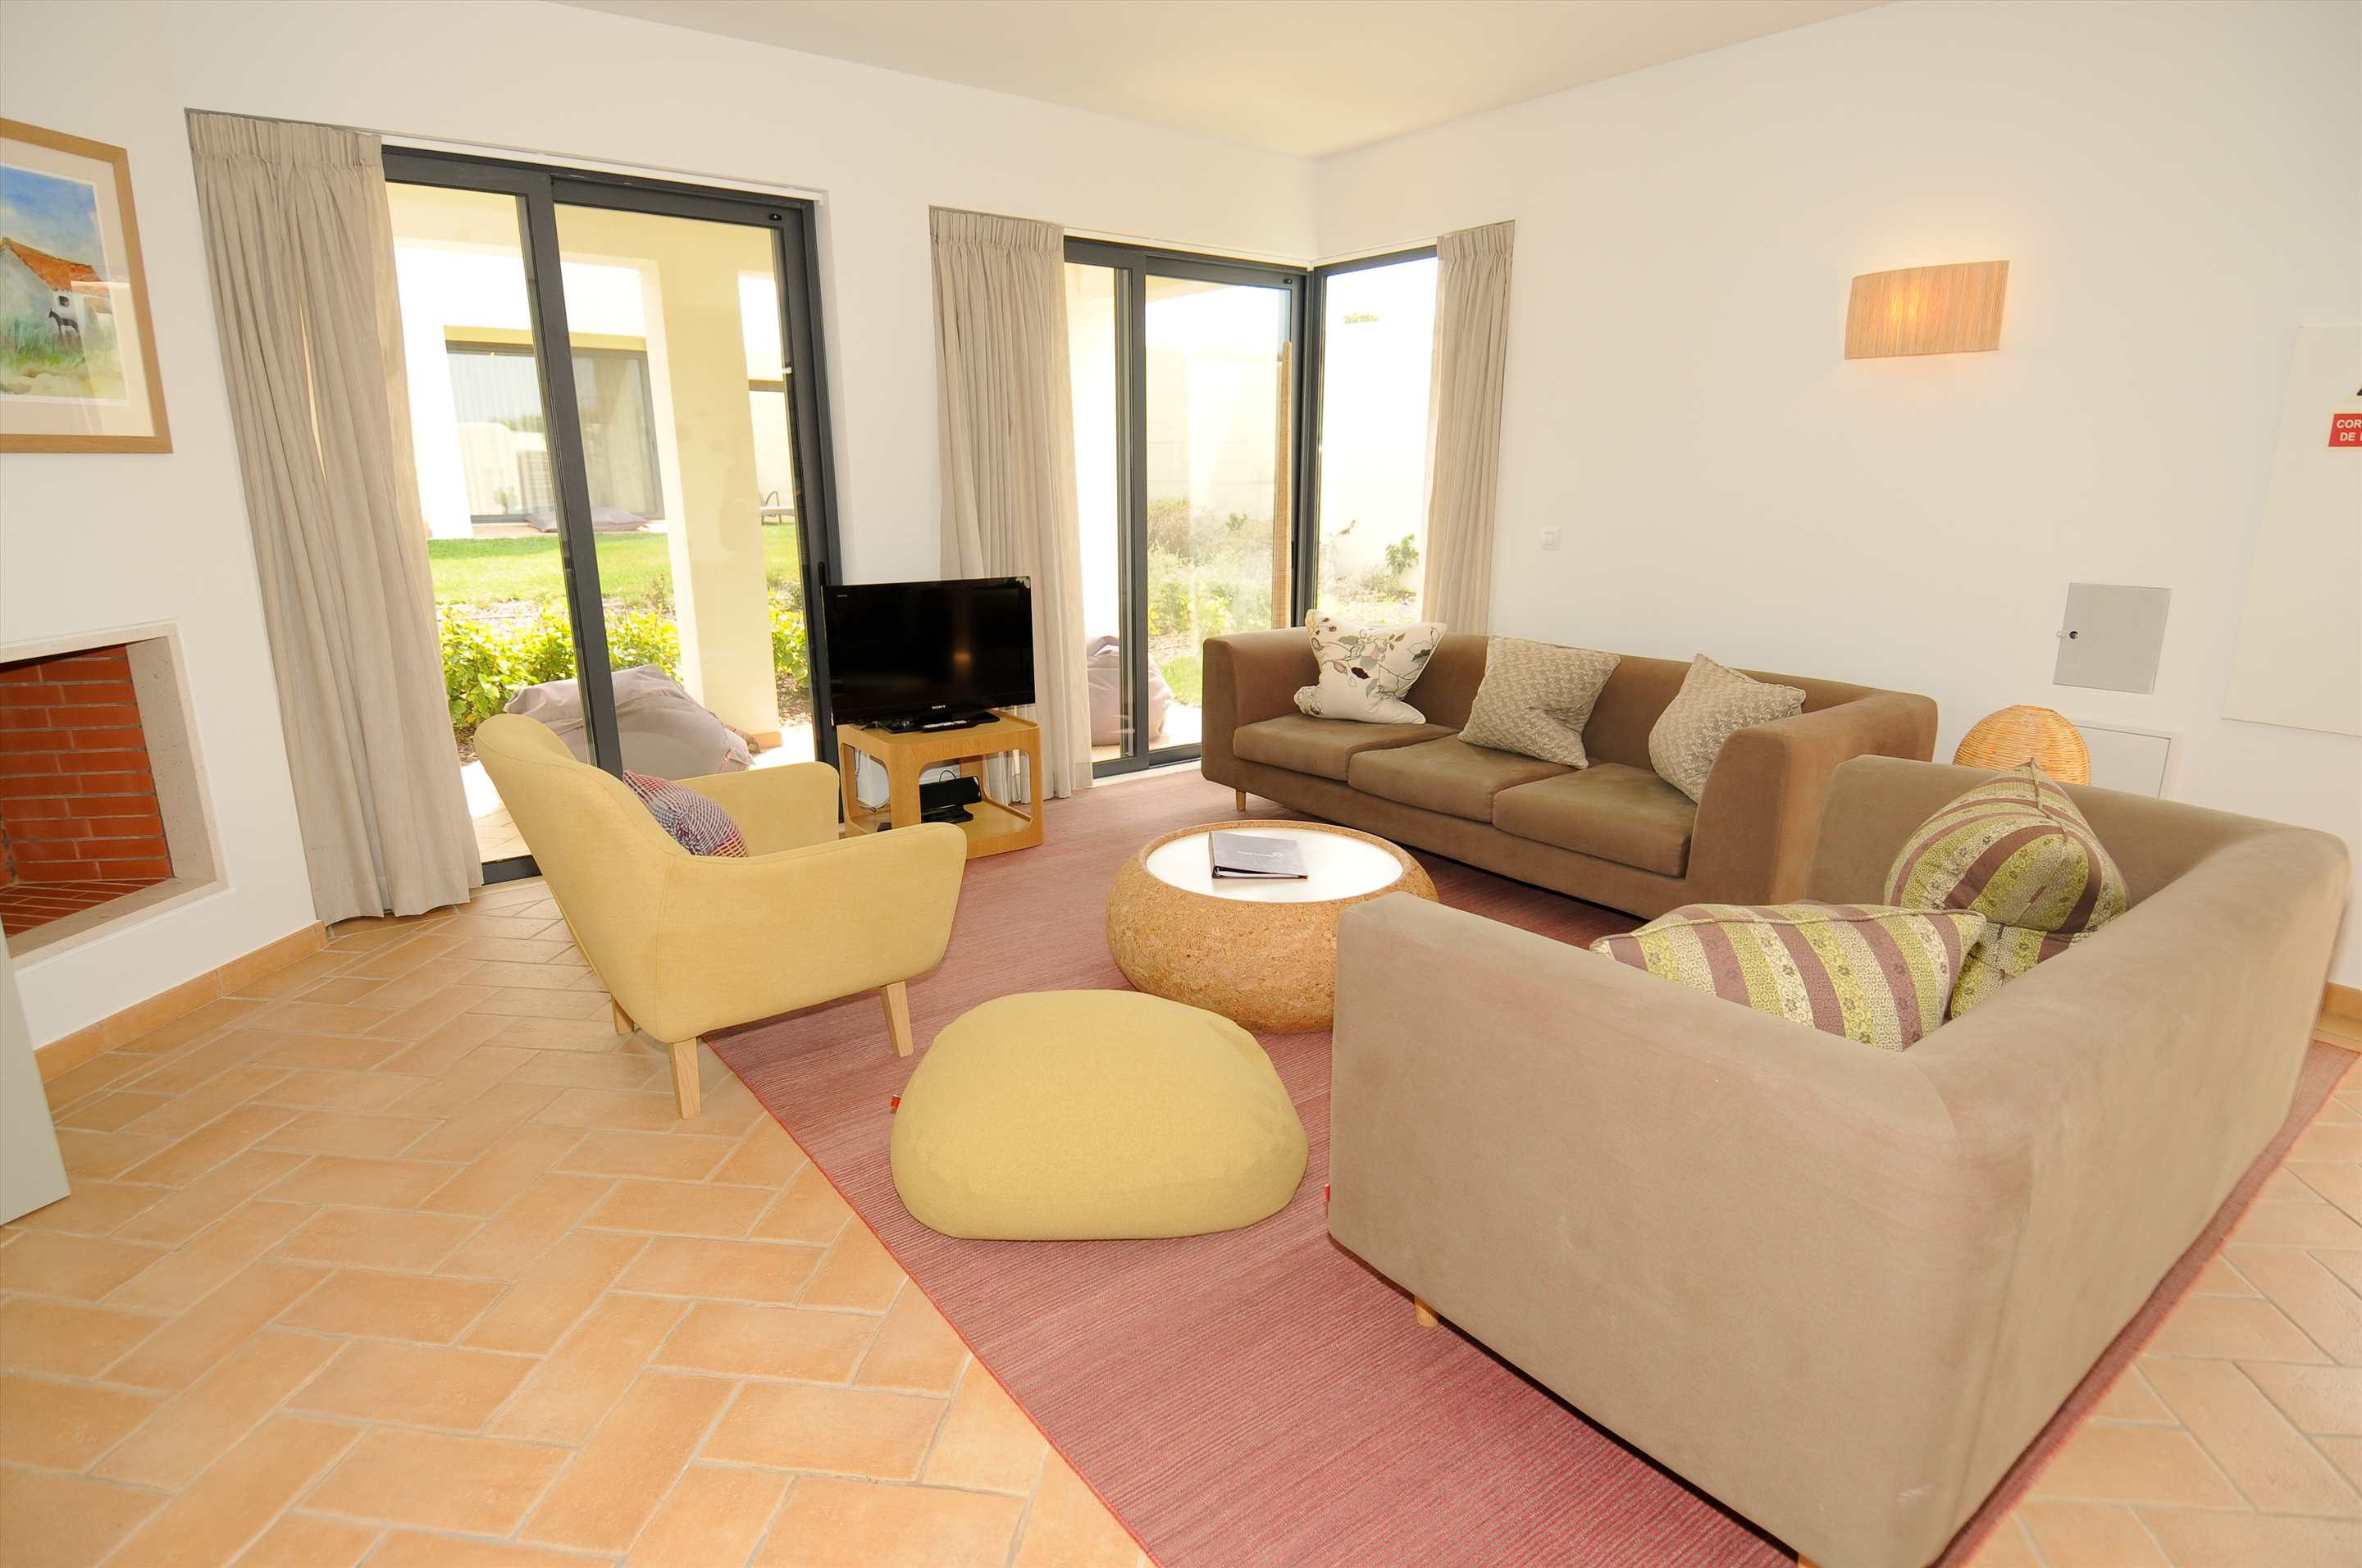 Martinhal Village Garden House, Deluxe One Bedroom plus Bunk Bed, 1 bedroom villa in Martinhal Sagres, Algarve